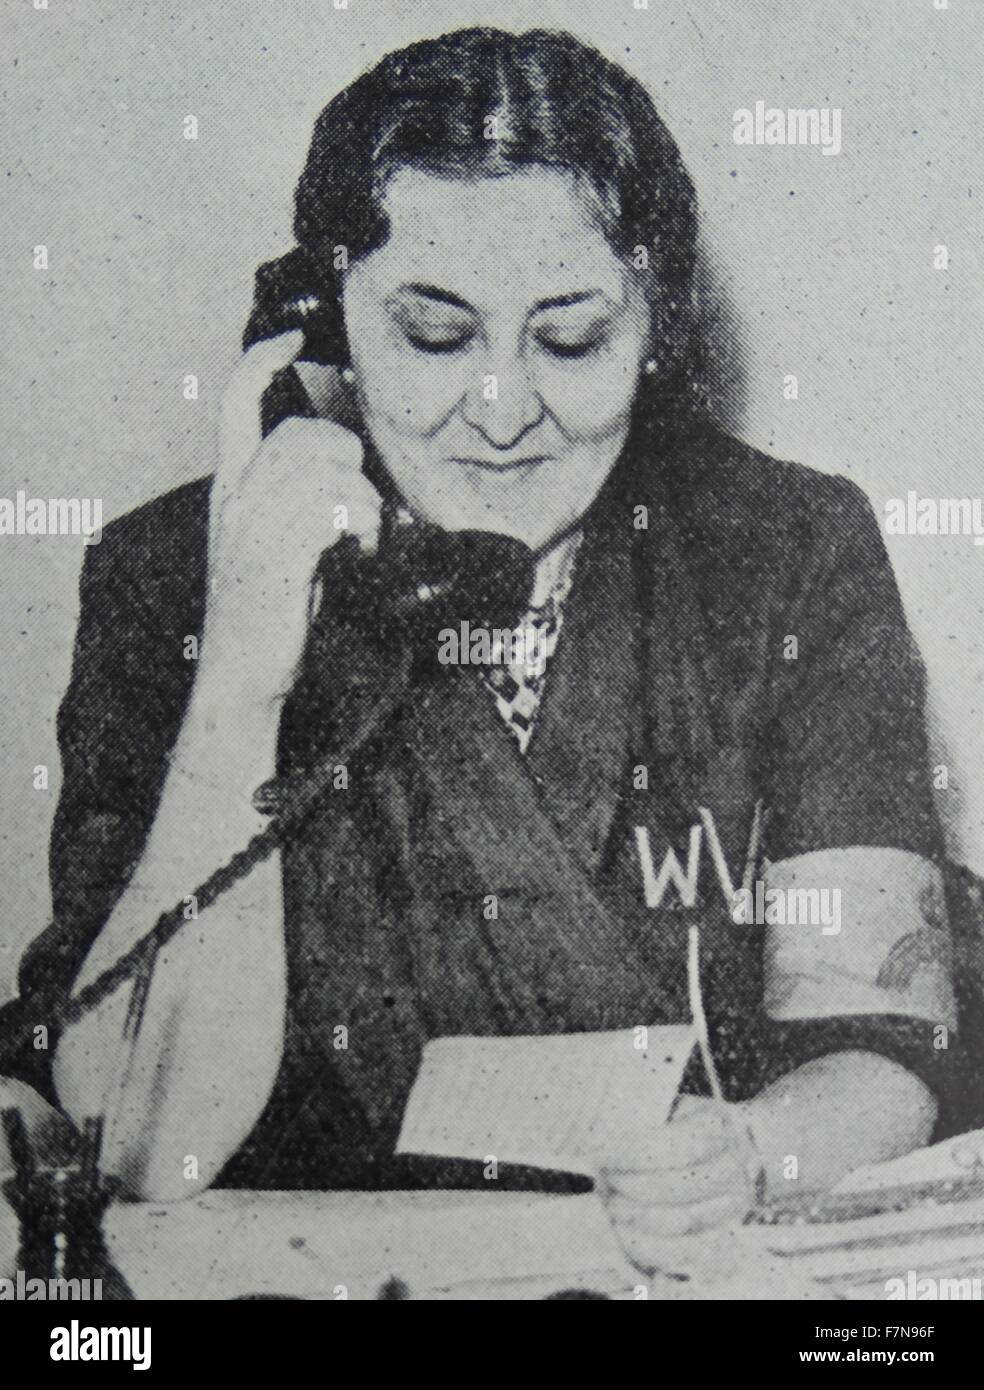 Fotografia della Stella Isaacs, marchesa di lettura (1894-1971) un aristocratico inglese, filantropo, fondatore e presidente di donne del Volontariato (WVS). Il WVS è ora noto come Royal servizio volontario. Datata 1939 Foto Stock